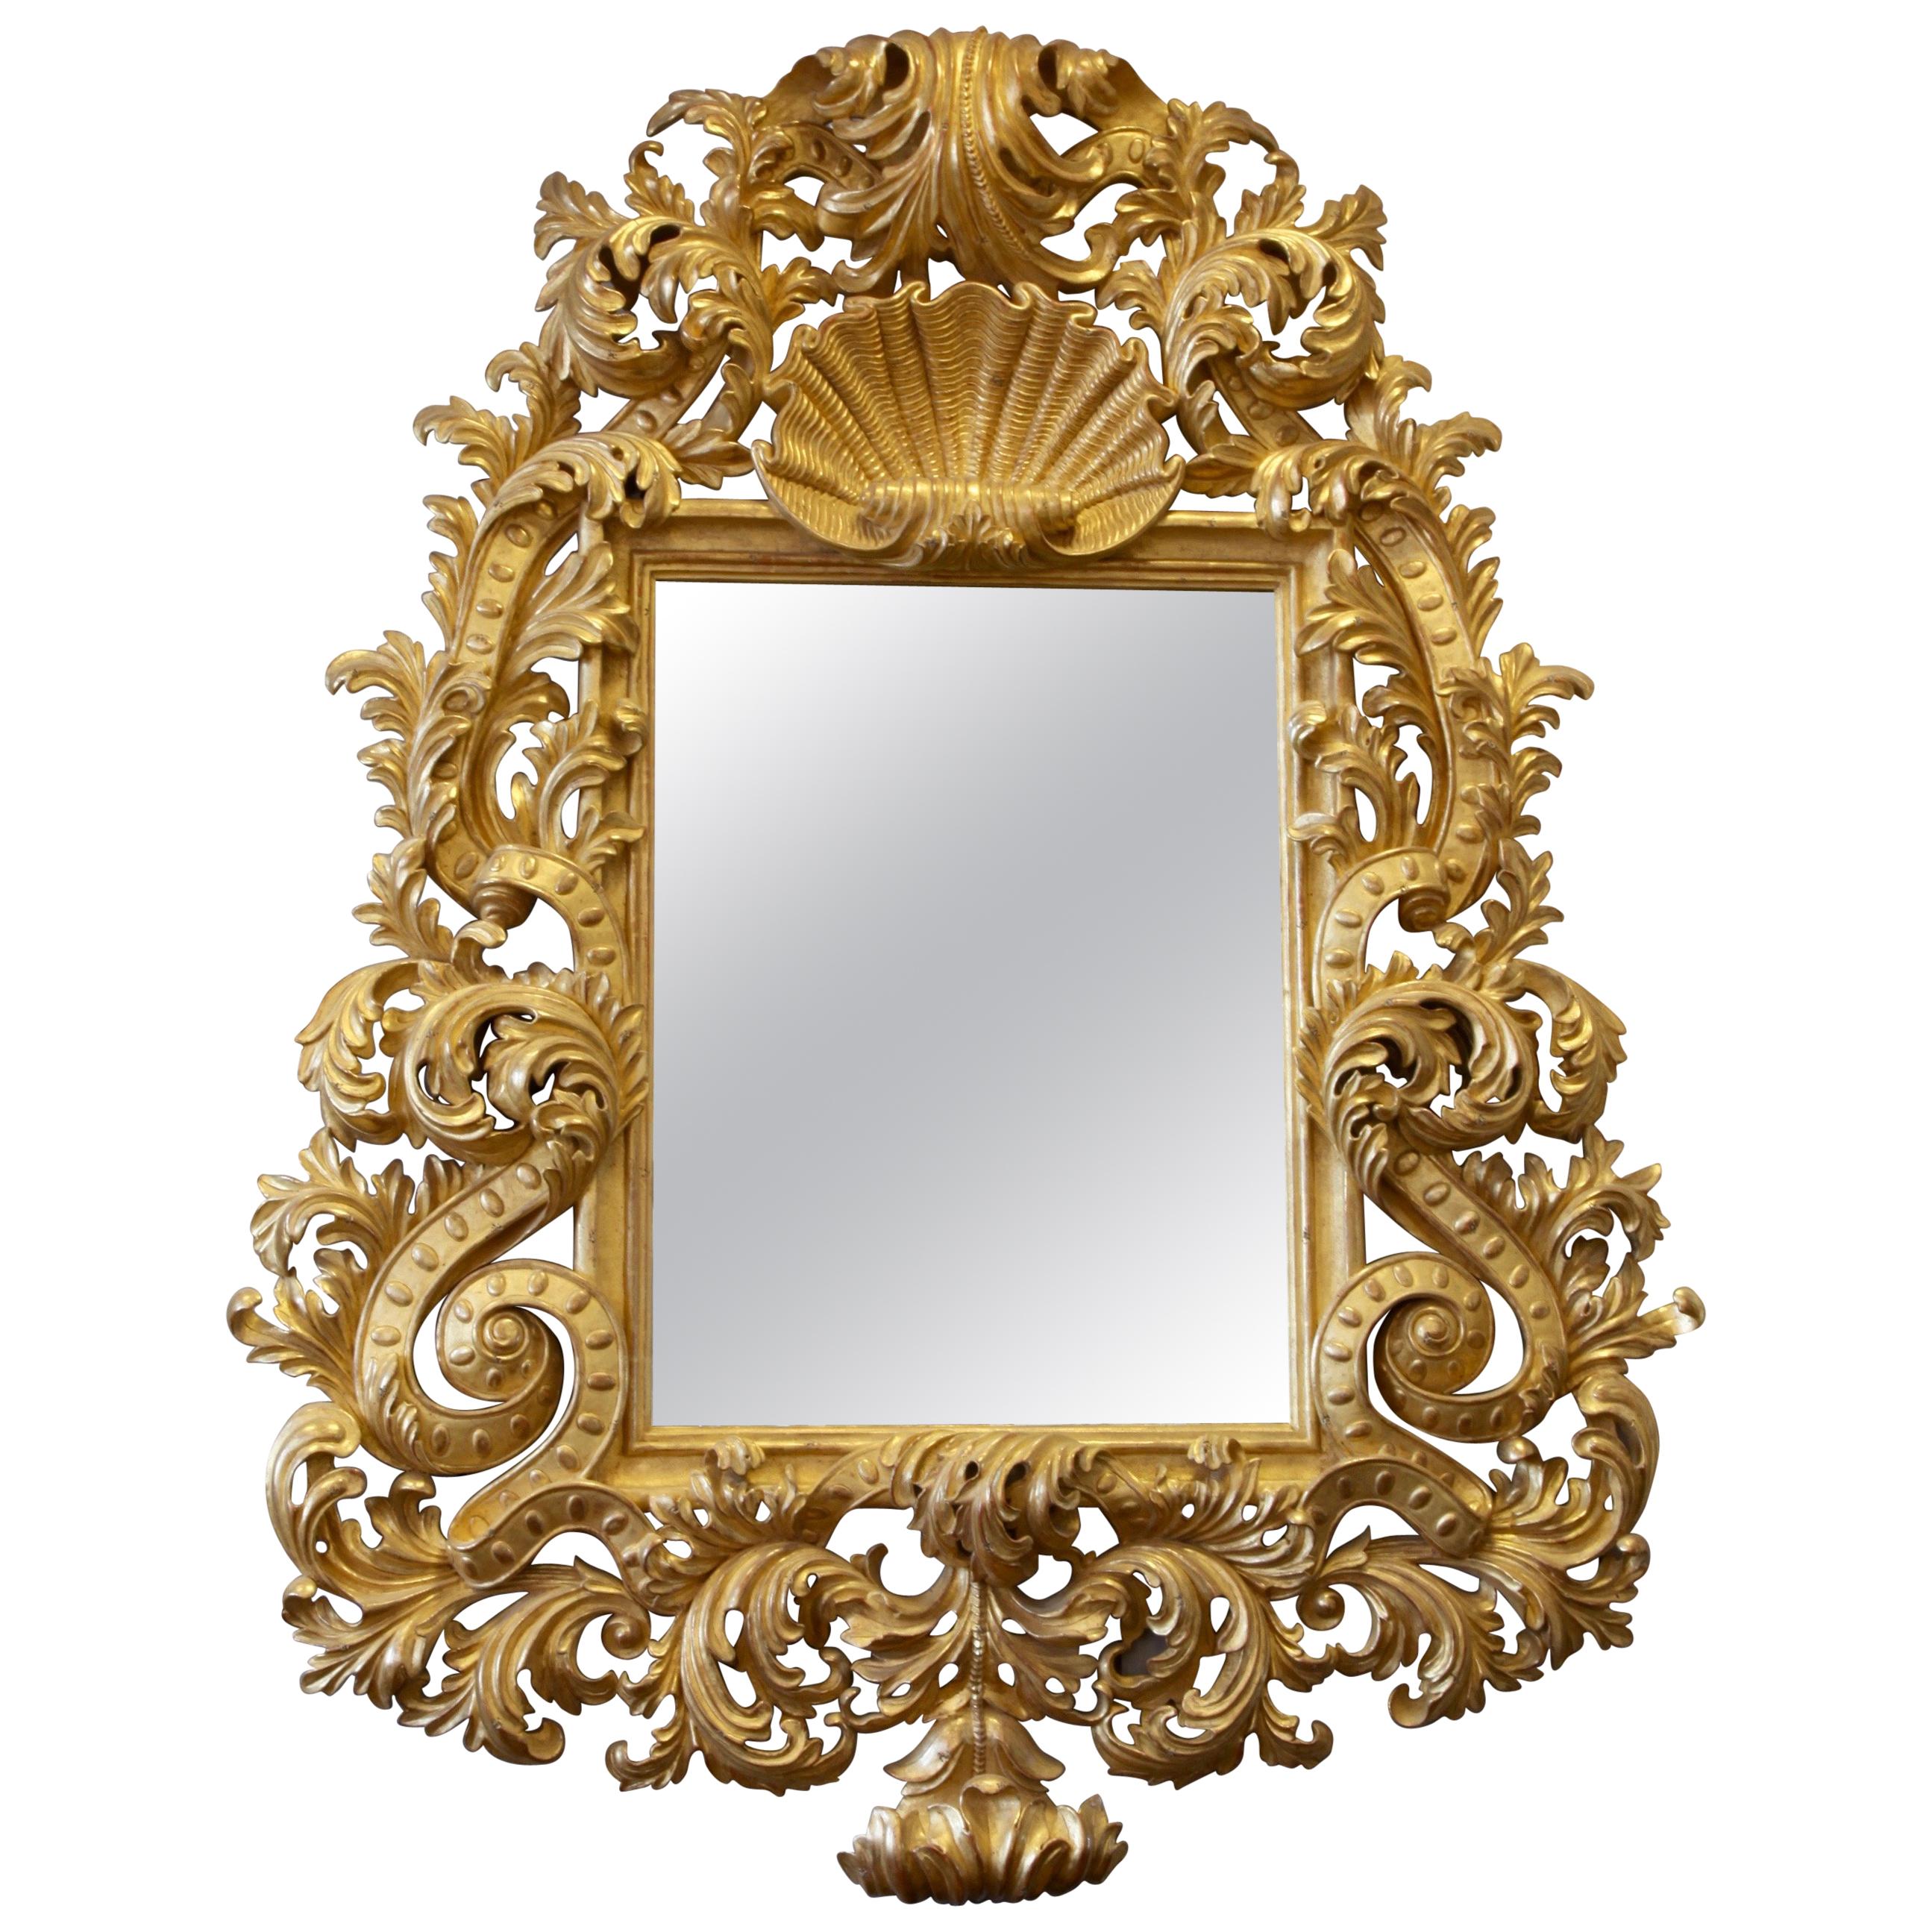 Grand miroir en bois doré sculpté et sculpté à la main de style Louis XV fabriqué par La Maison London